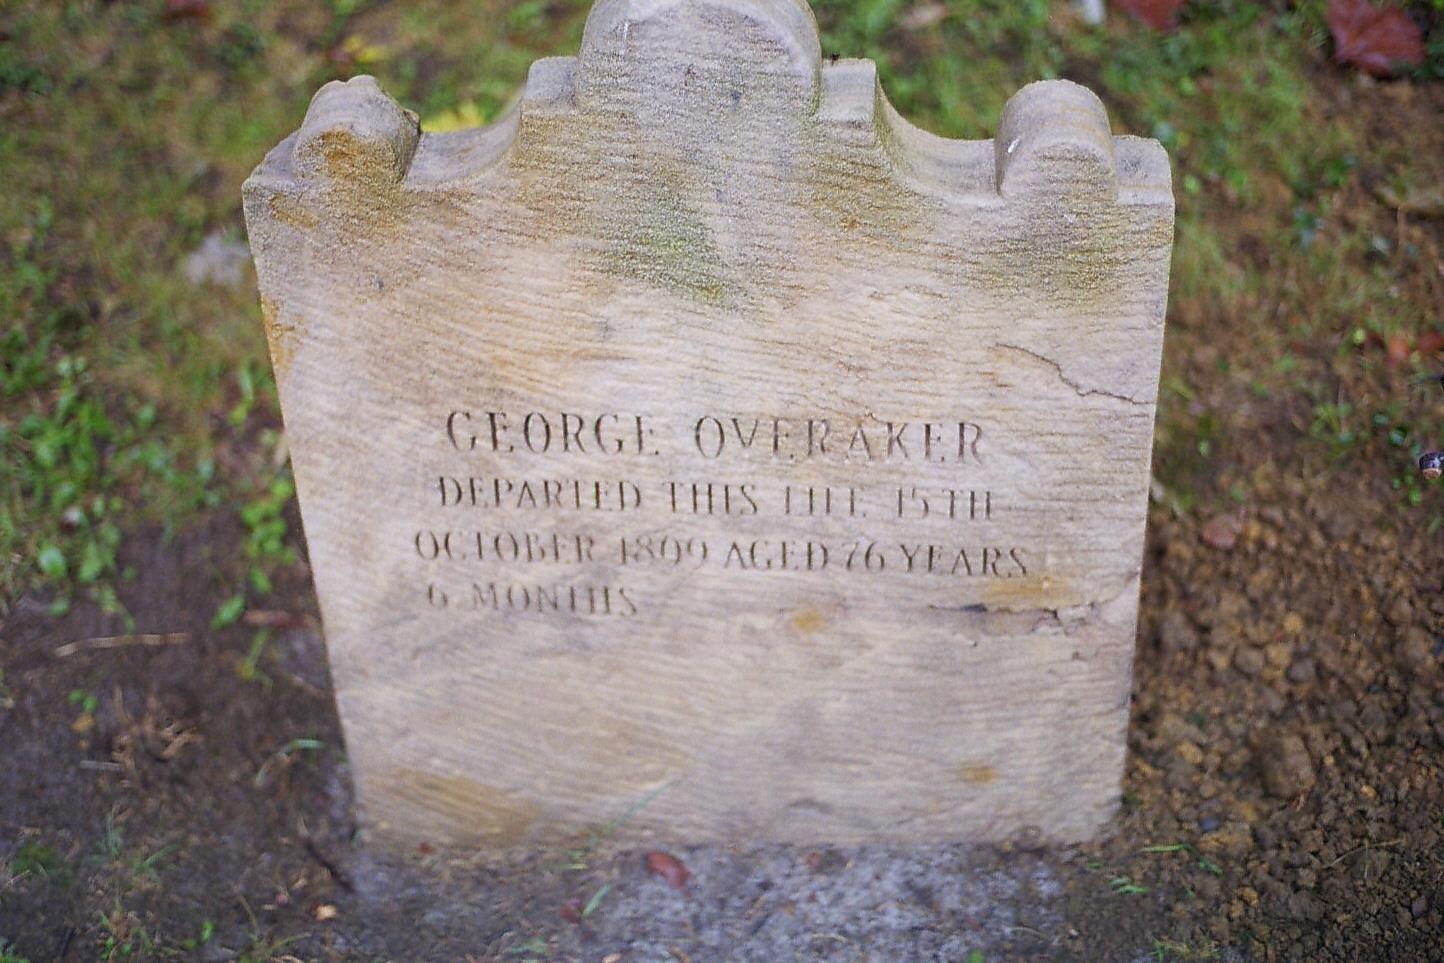 Pvt. George Overacre Grave Marker - Recarved